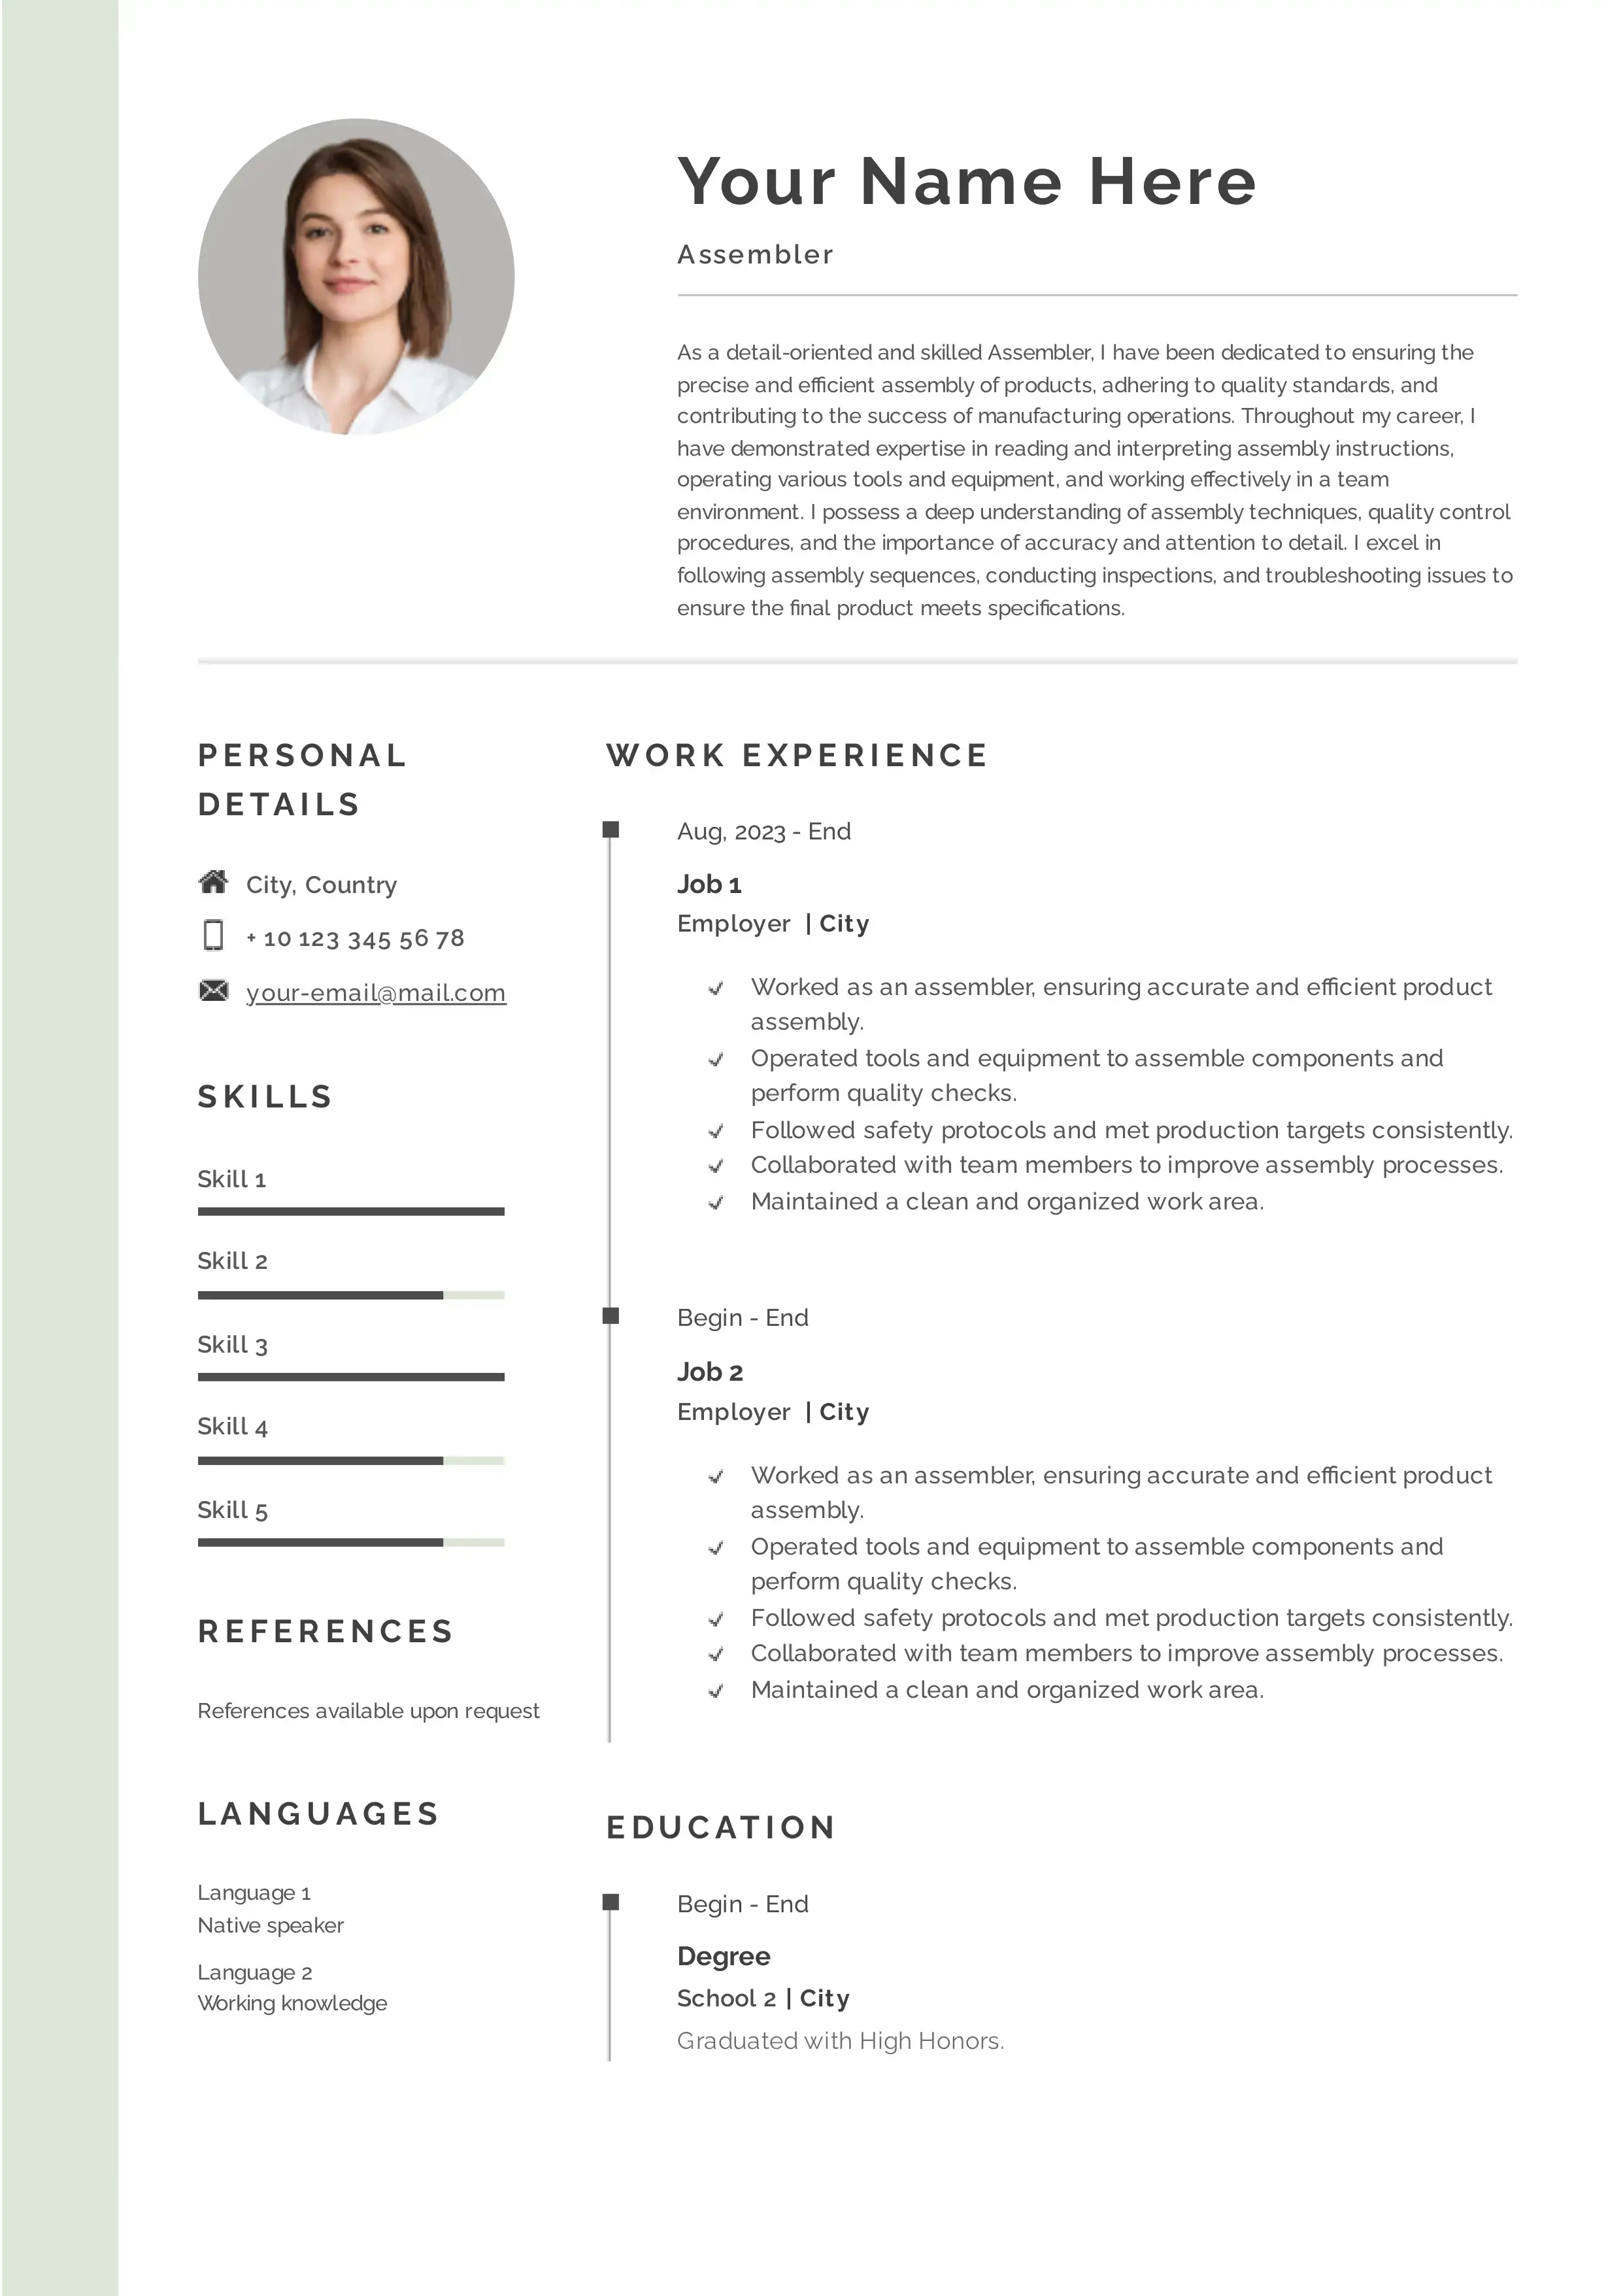 Assembler resume CV